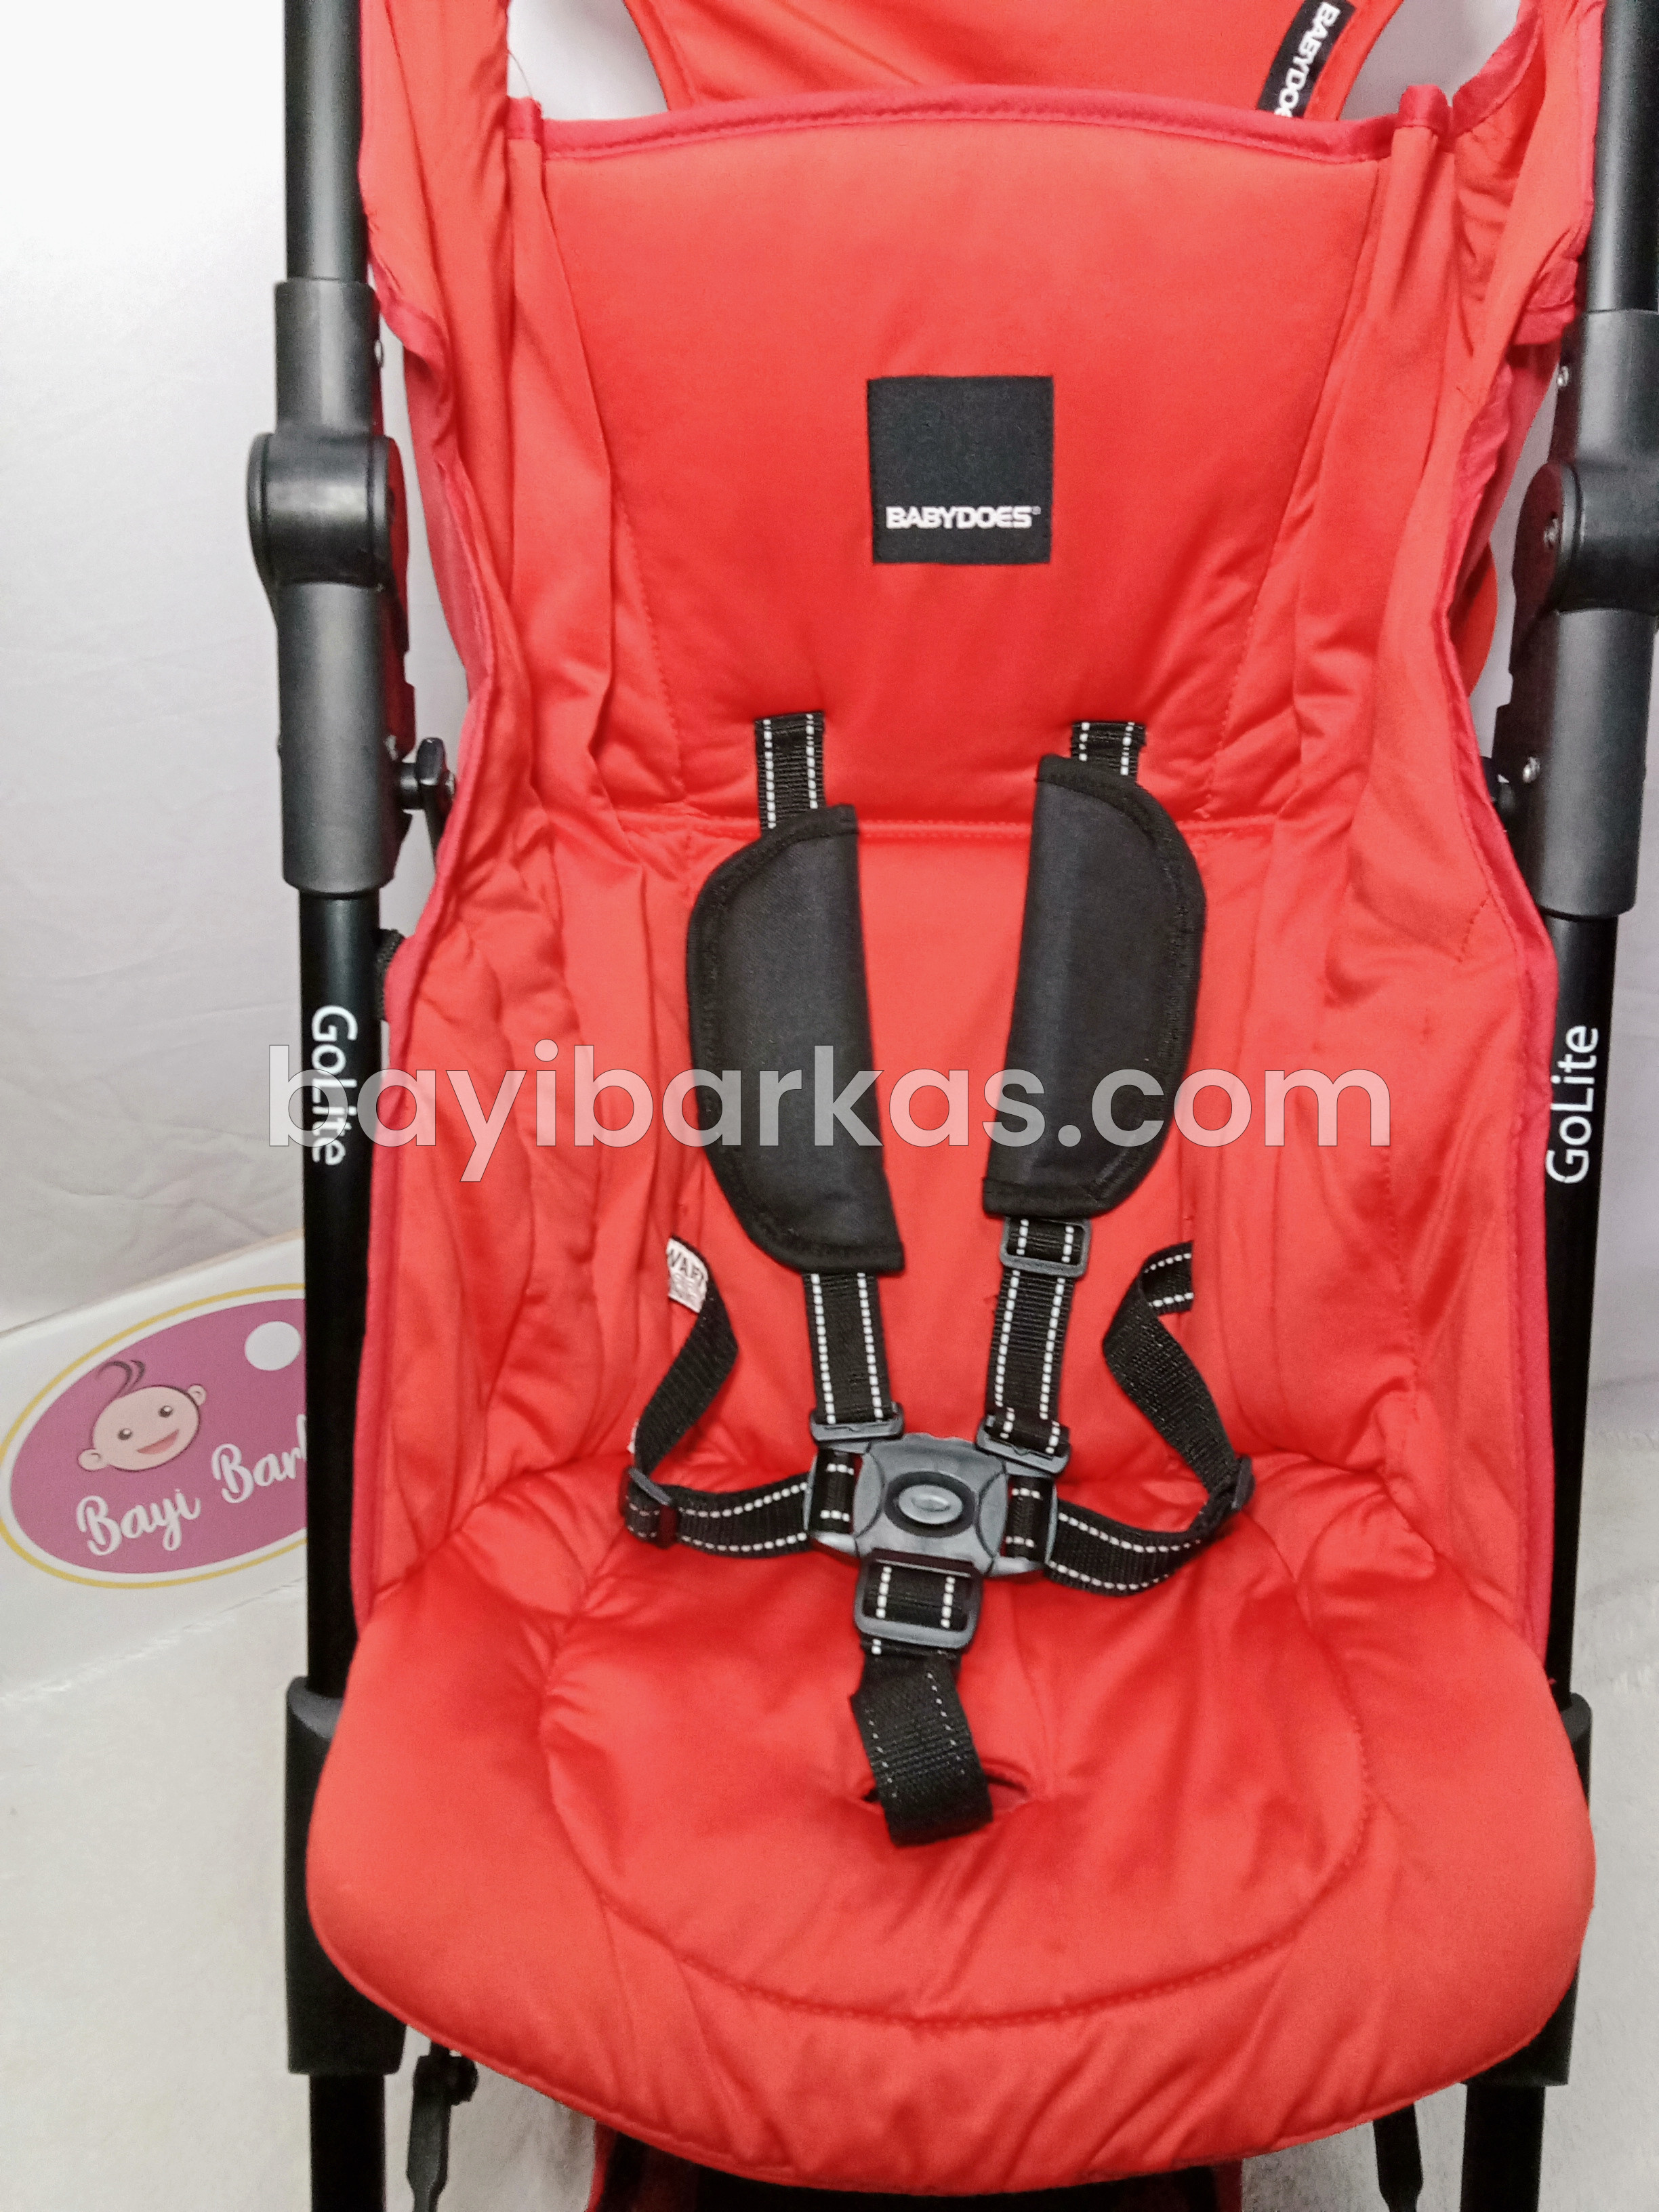 Stroller Cabin Size merk BABY DOES 'GoLite' Merah *Second (BP.MFA)